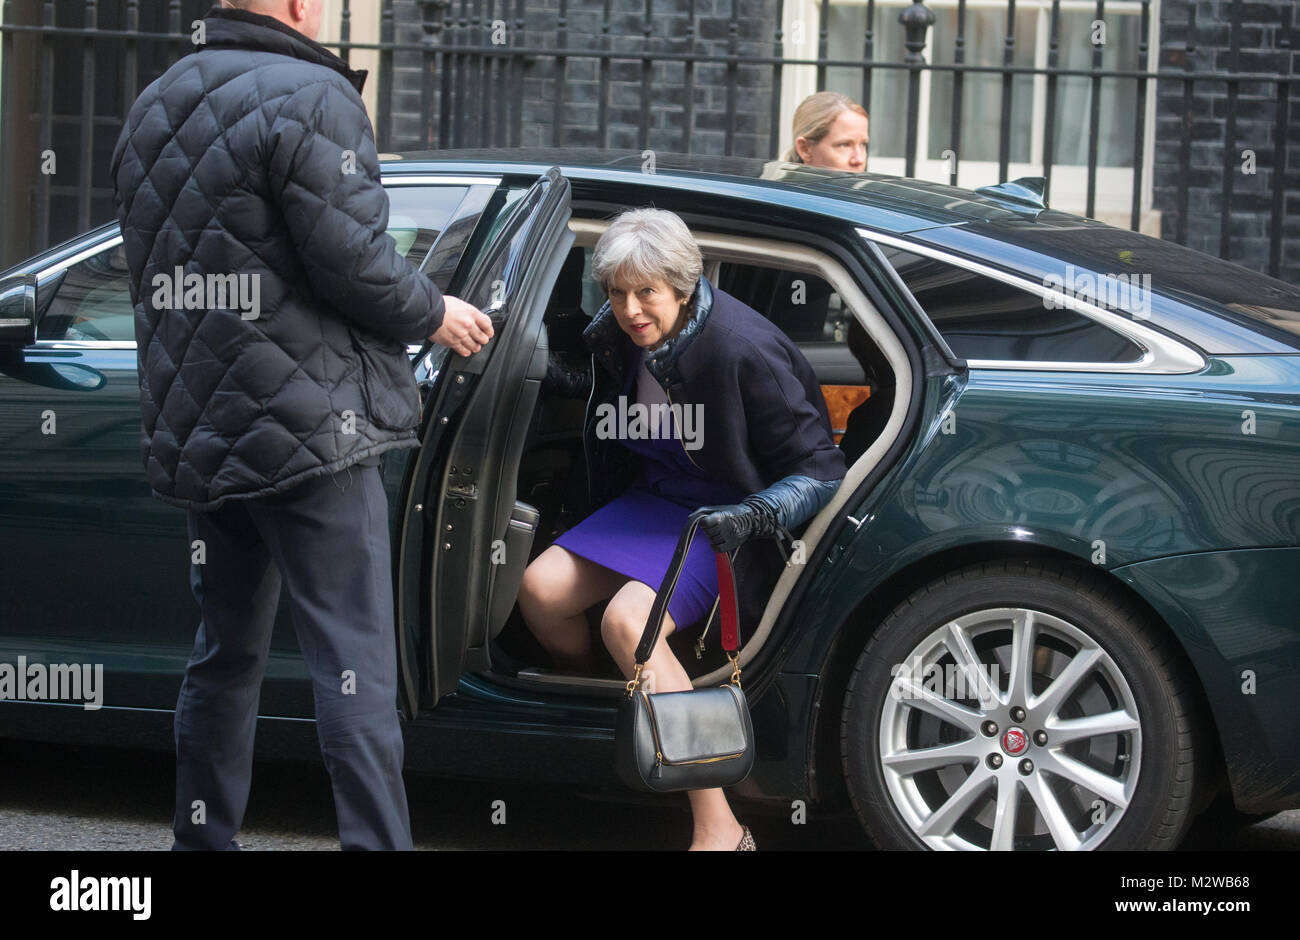 Primo ministro britannico, Theresa Maggio, arriva di ritorno da una visita al Parlamento europeo in occasione del centenario della nascita del giorno le donne hanno ottenuto il diritto di voto Foto Stock